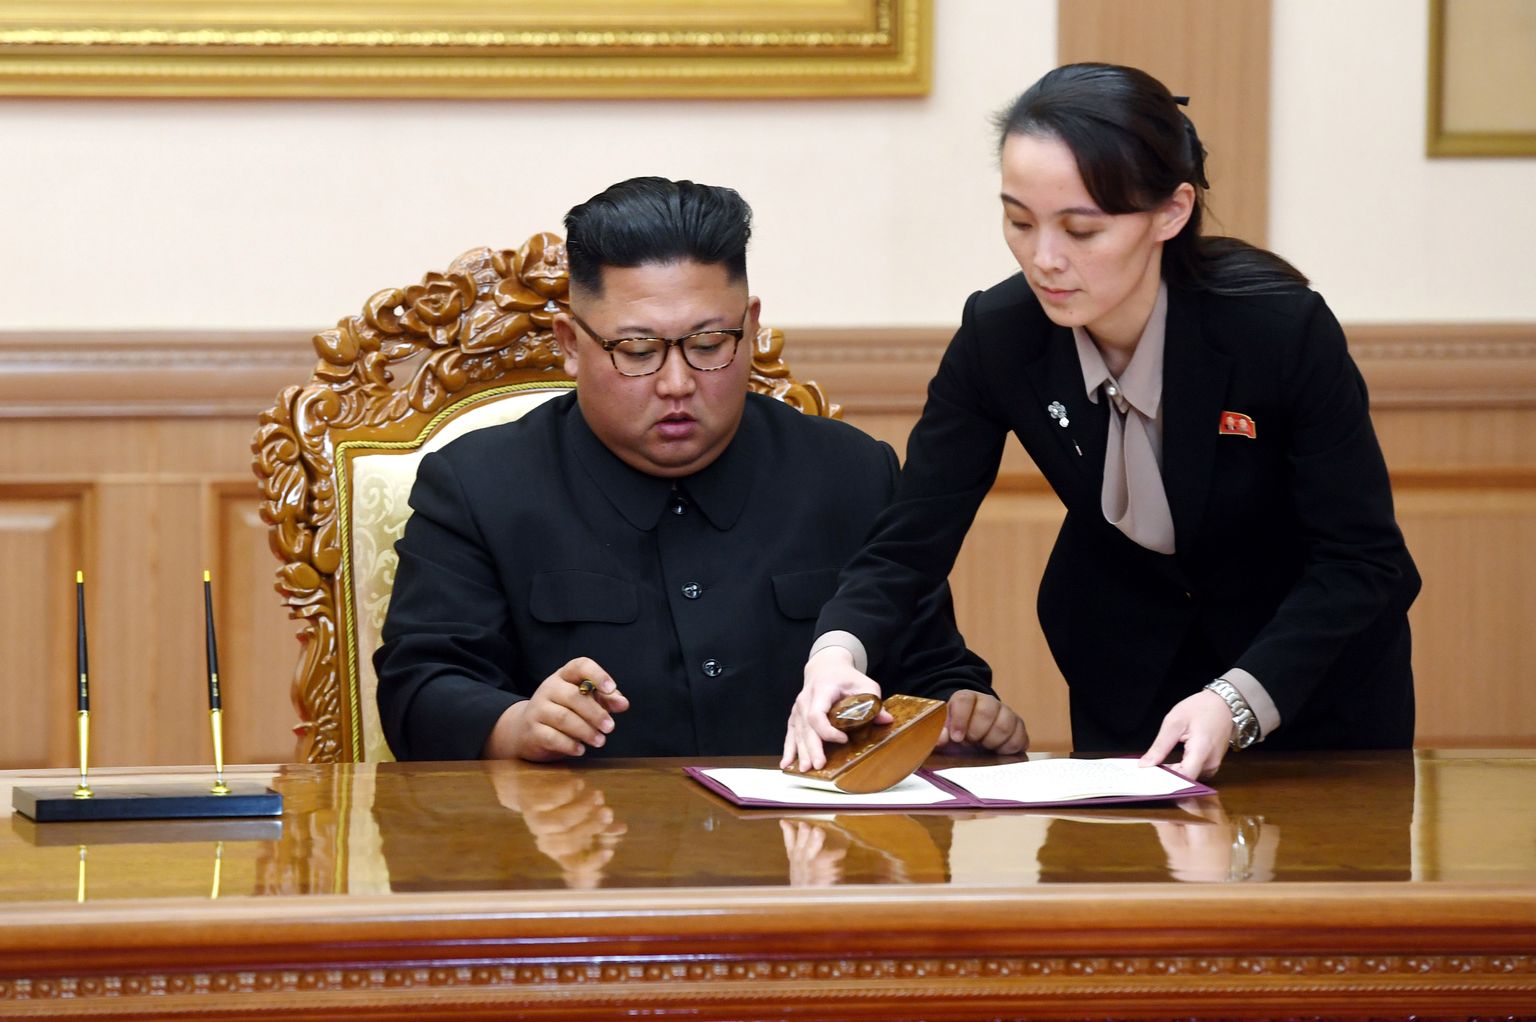 Põhja-Korea juht Kim Jong-un koos õe Kim Yo-jongiga. Kimi õde on viimasel paaril aastal võrdlemisi tugevalt meediapildis olnud ning meedias on spekuleeritud, et temast võiks saada järgmine Põhja-Korea juht.